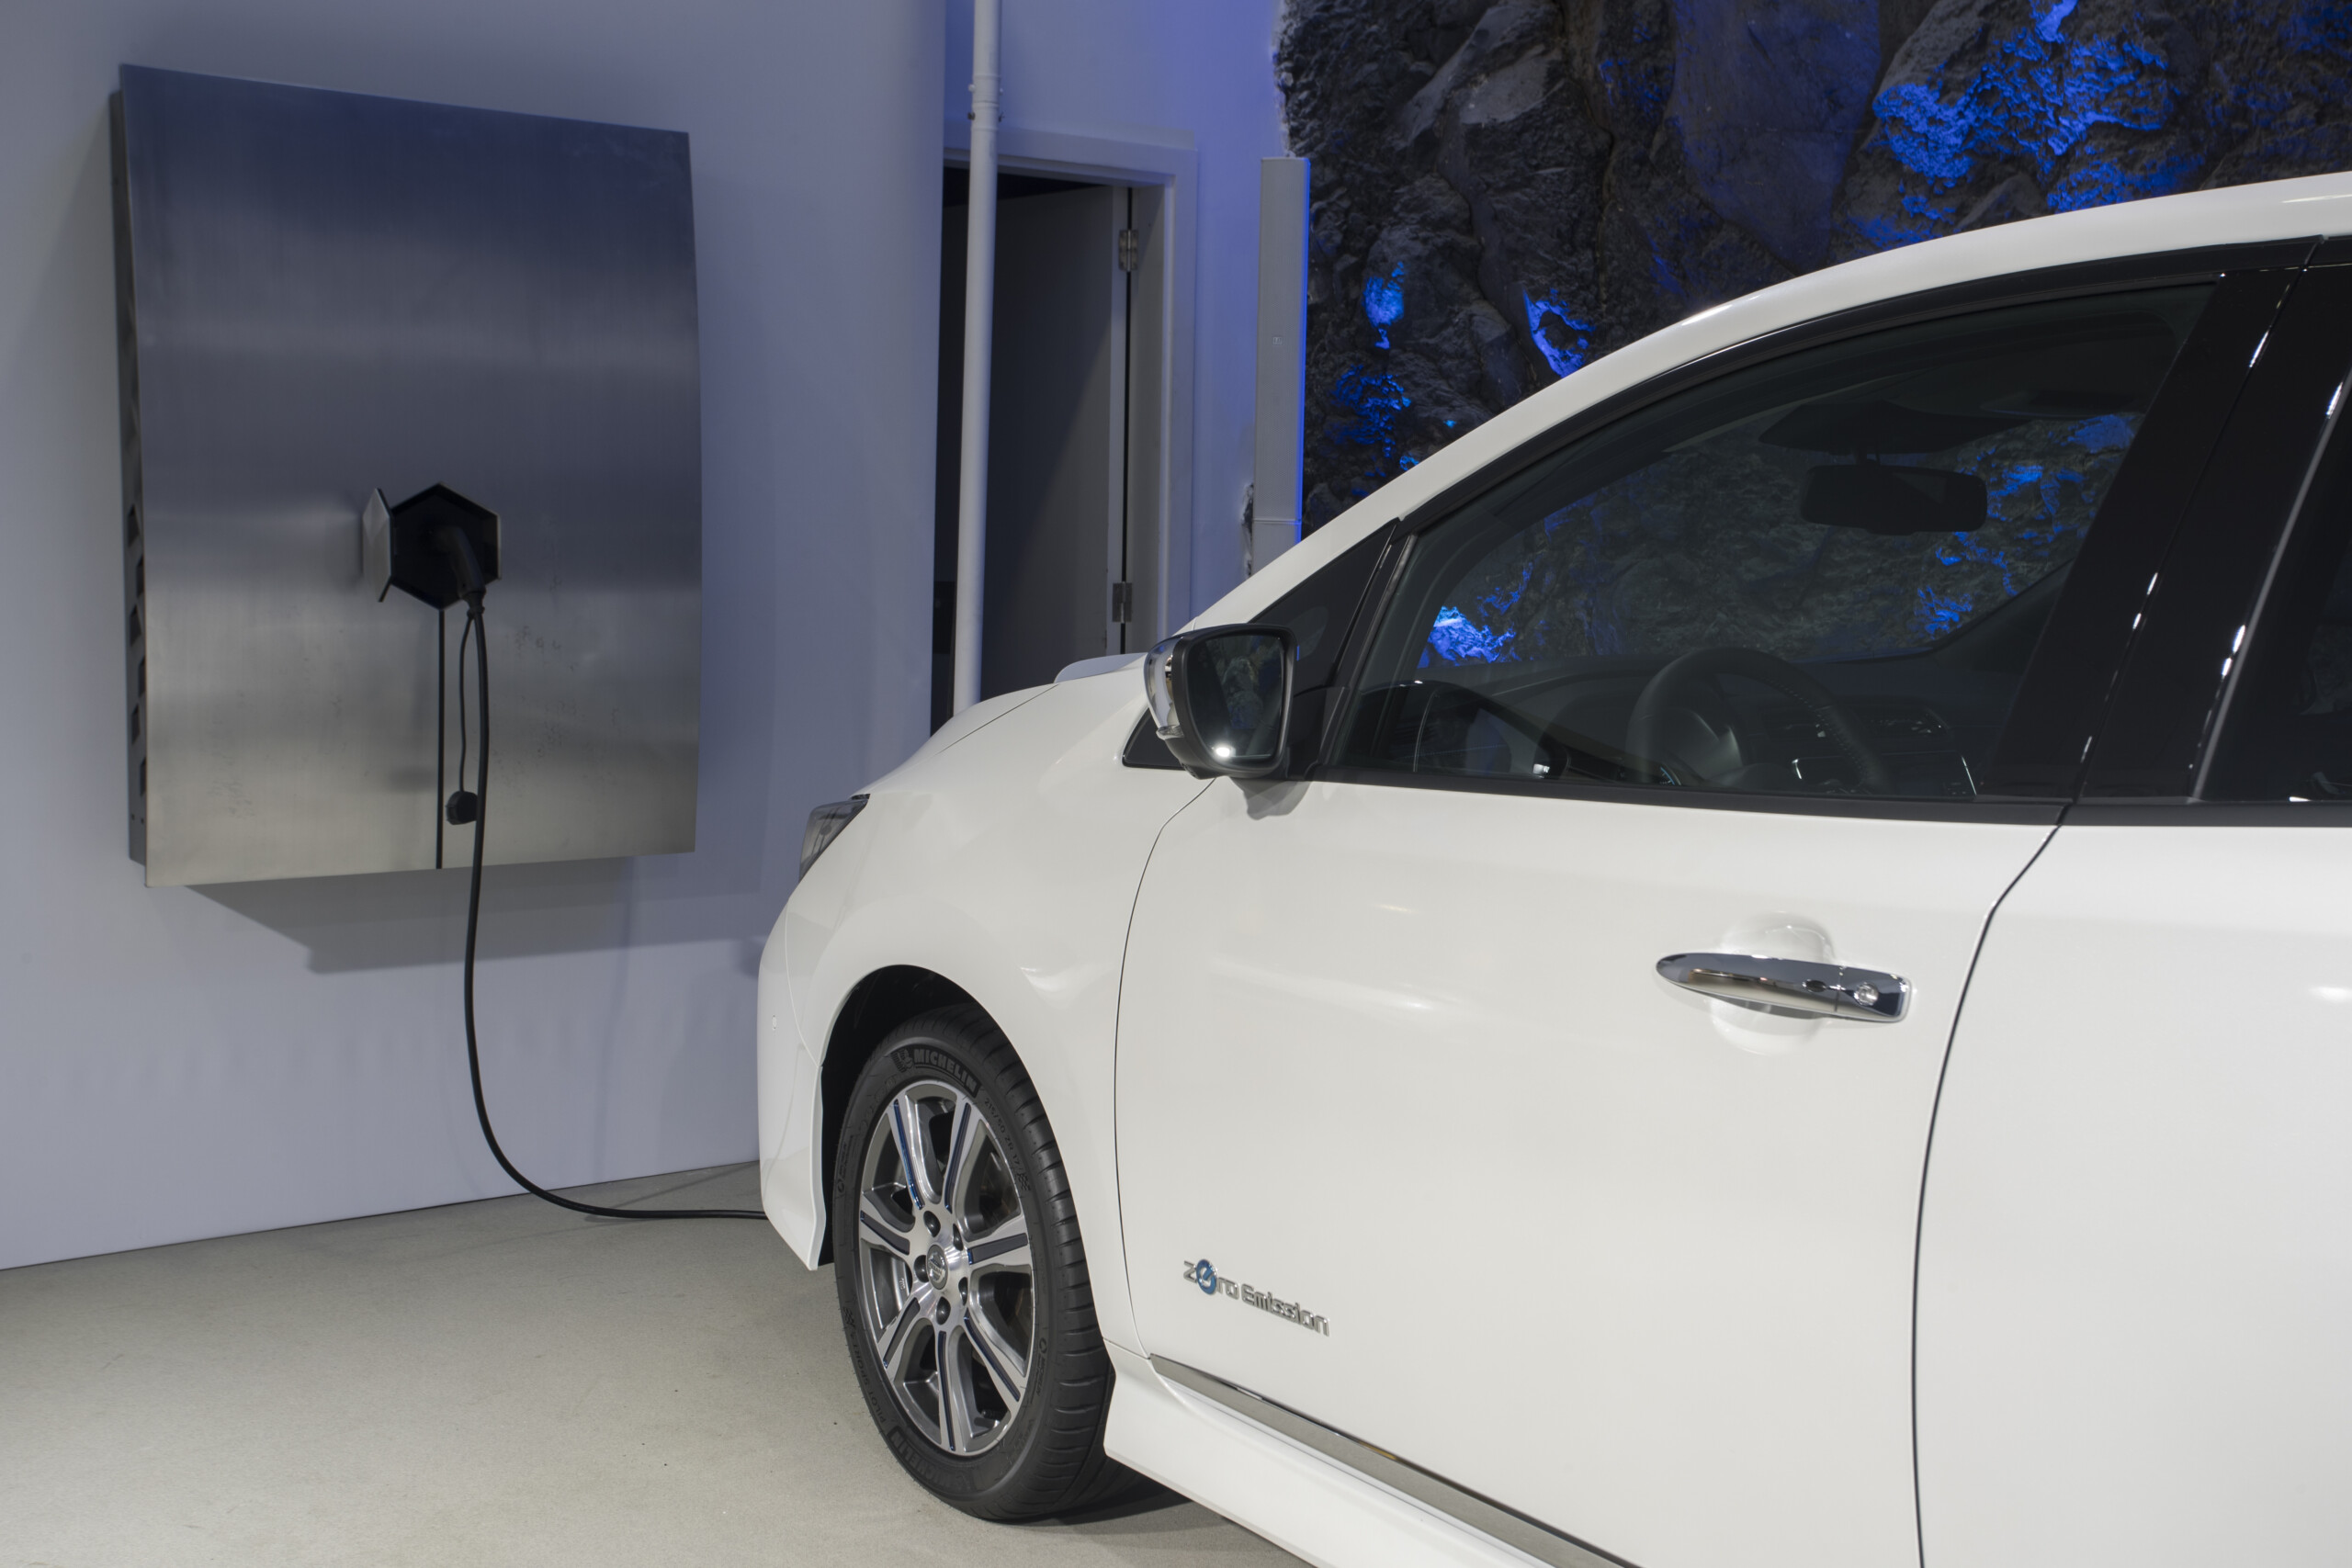 Nissan LEAF — borne de recharge électrique et prise renforcée